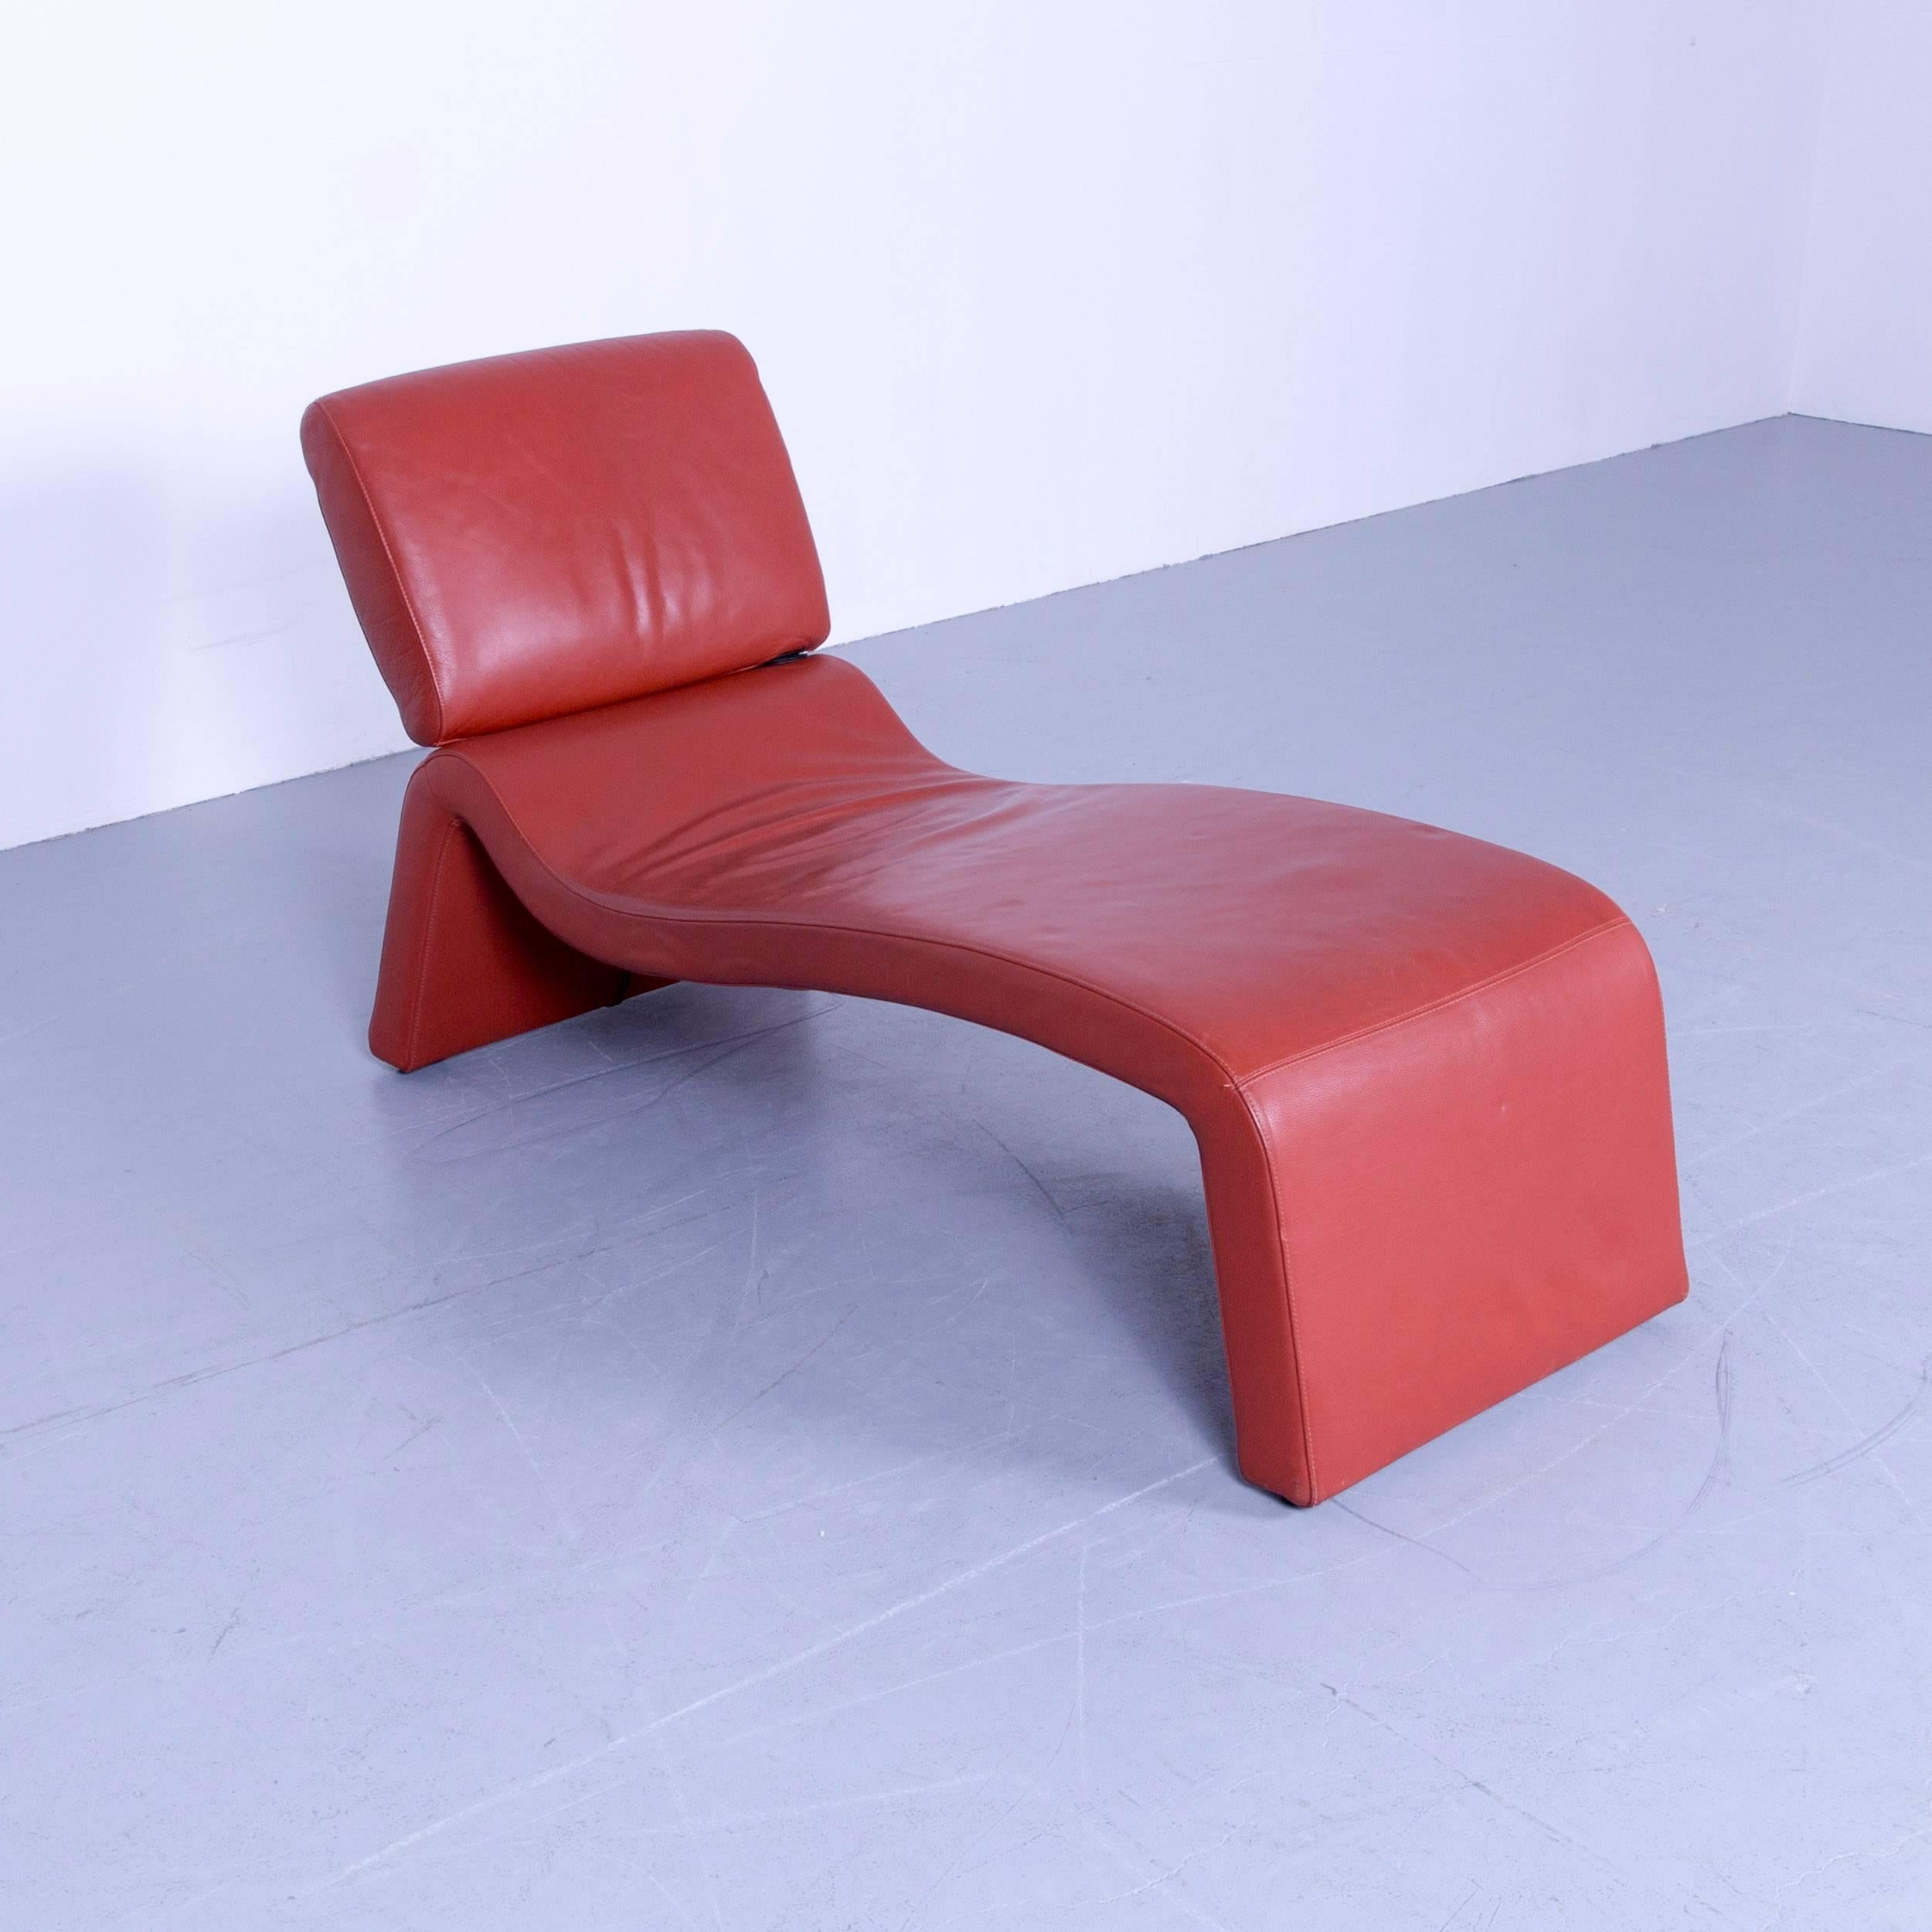 orange recliner chair